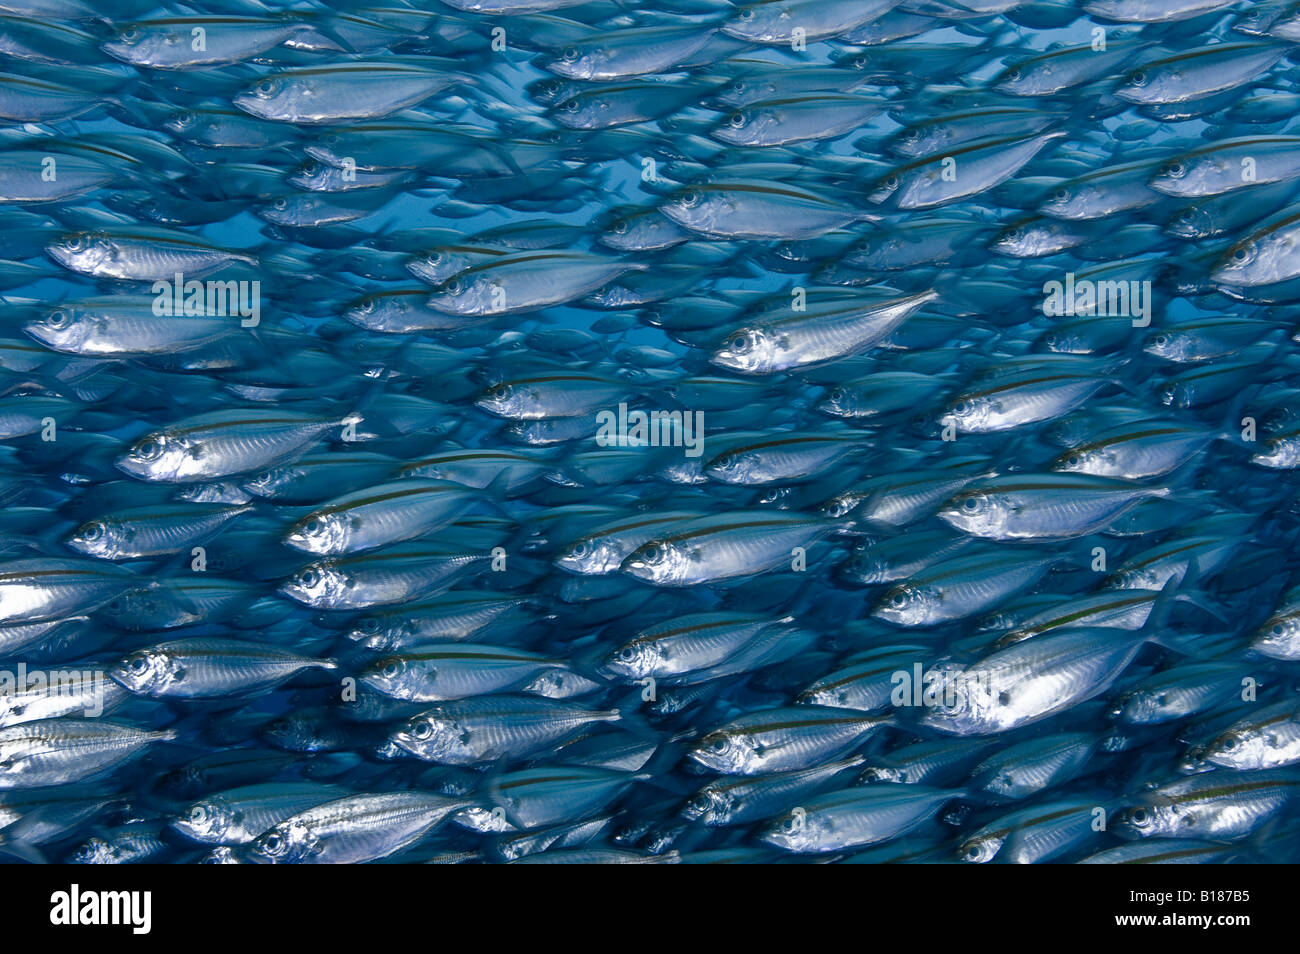 Köderfischen Stachelmakrelen Selaroides Ambon Maluku Inseln Bandasee Indonesien Stockfoto